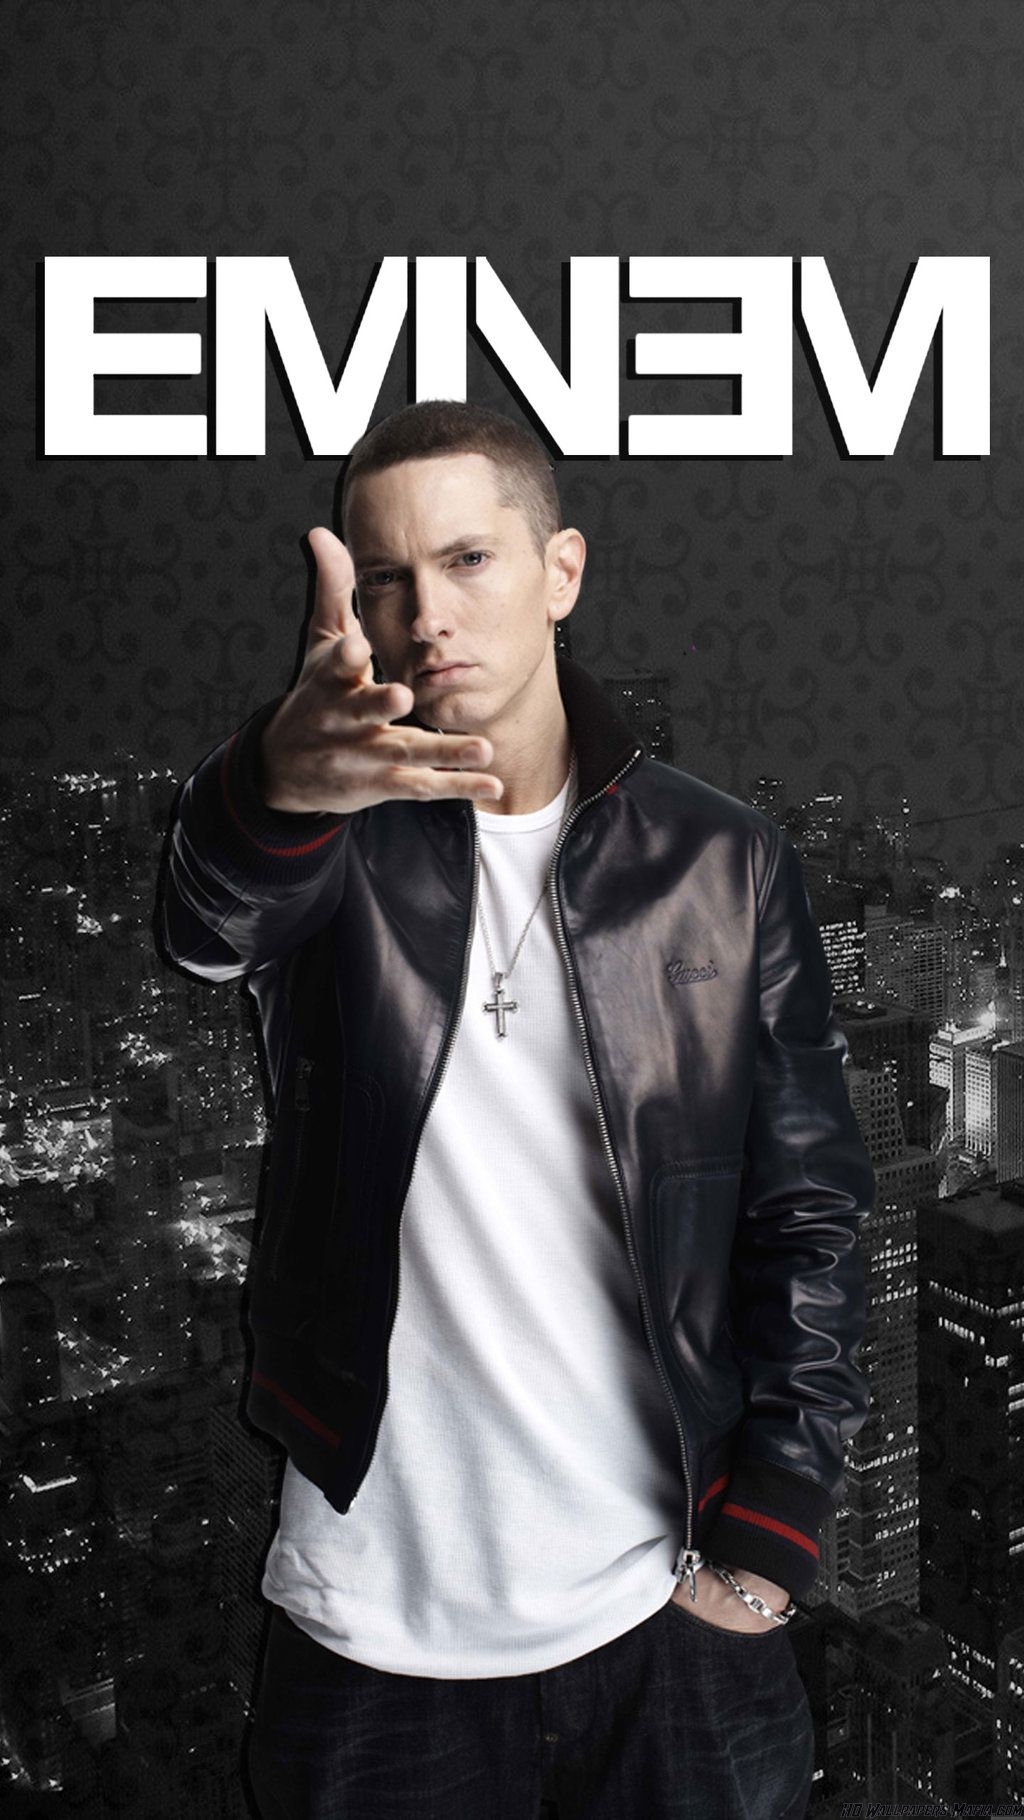 [30+] Eminem 2018 Wallpapers on WallpaperSafari